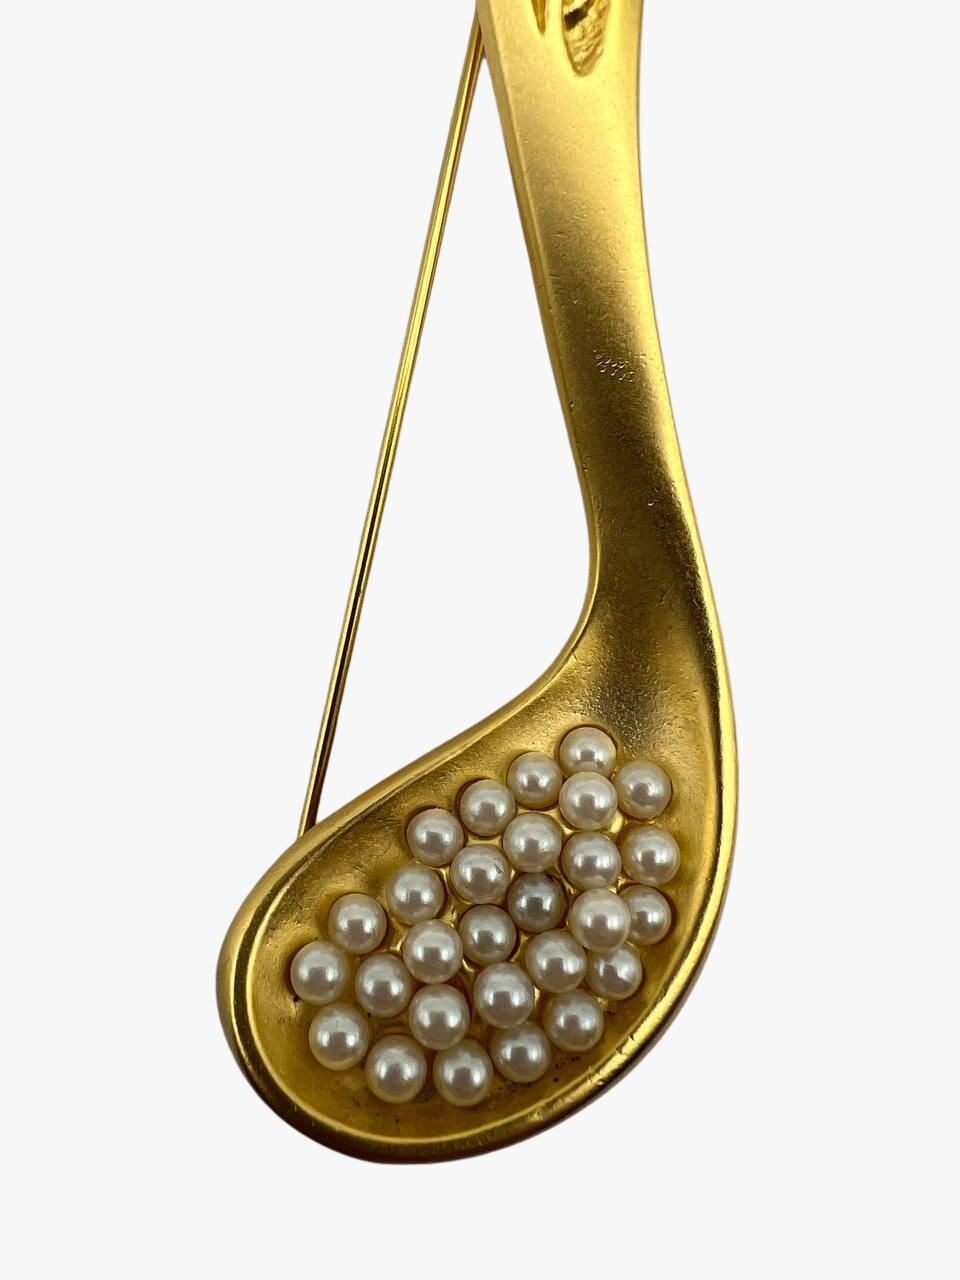 Broche vintage de Karl Lagerfeld représentant une cuillère de caviar en fausses perles plaquées or 24 carats. 

Signé. Les monogrammes KL. 

Année : 1992s

État : excellent. Aucun signe visible d'usure. 

Taille : 12 cm

........Informations